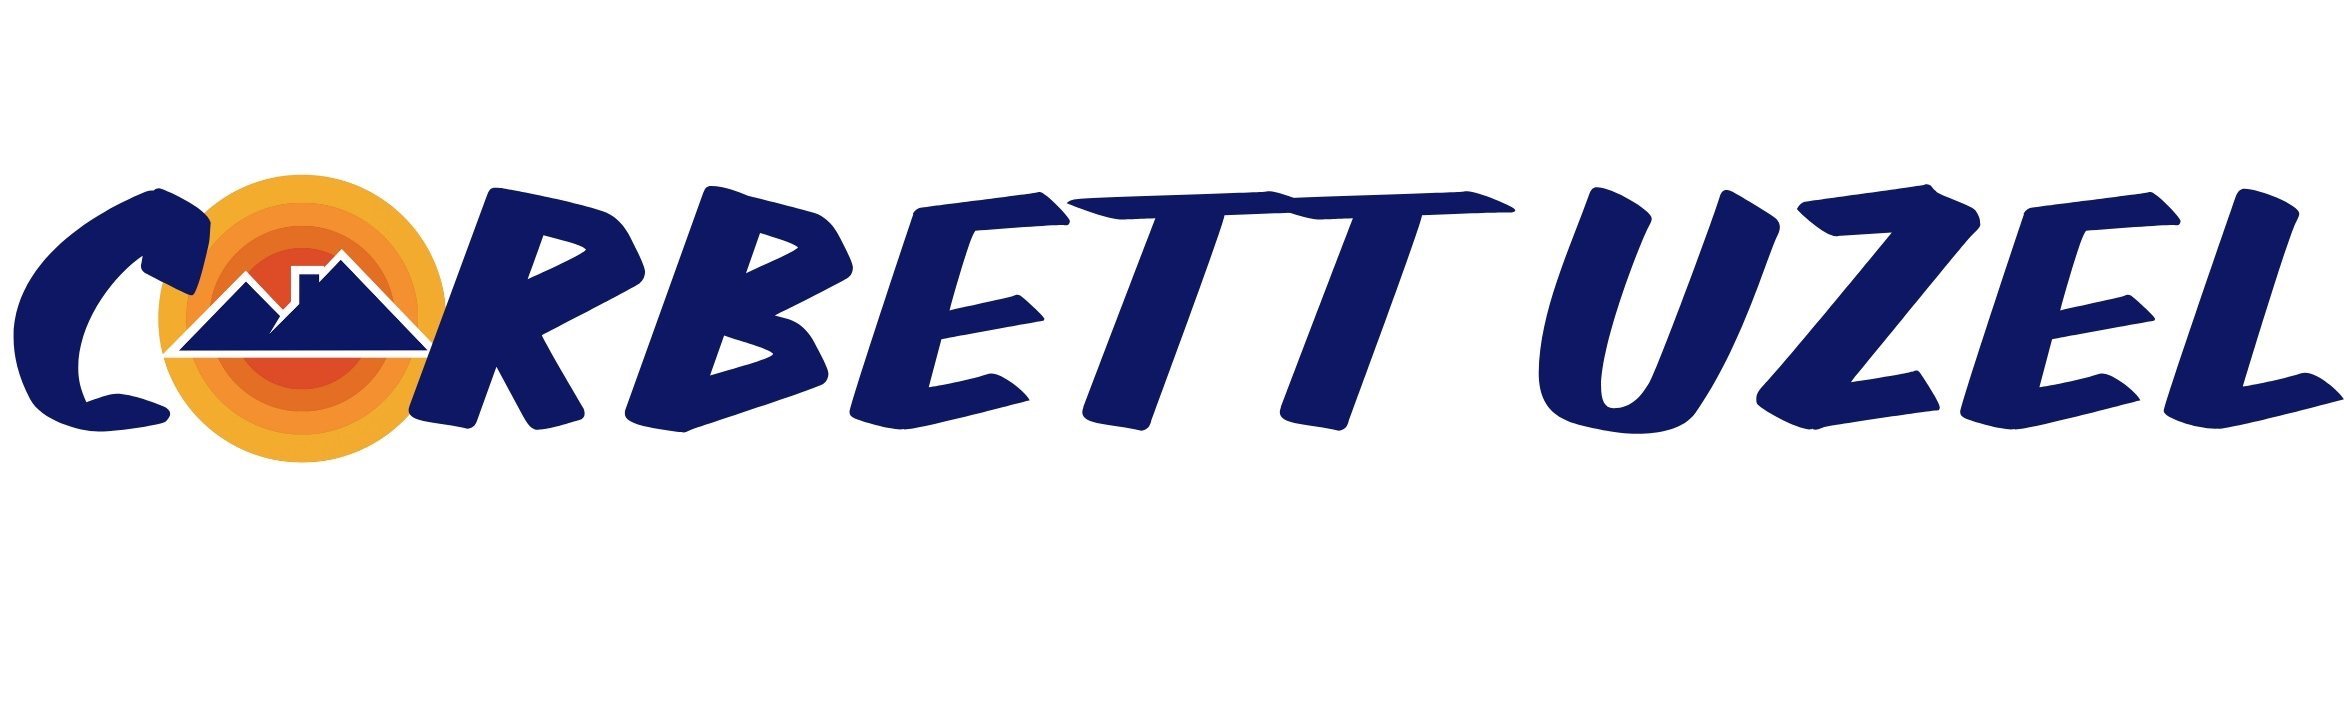 Corbett Uzel